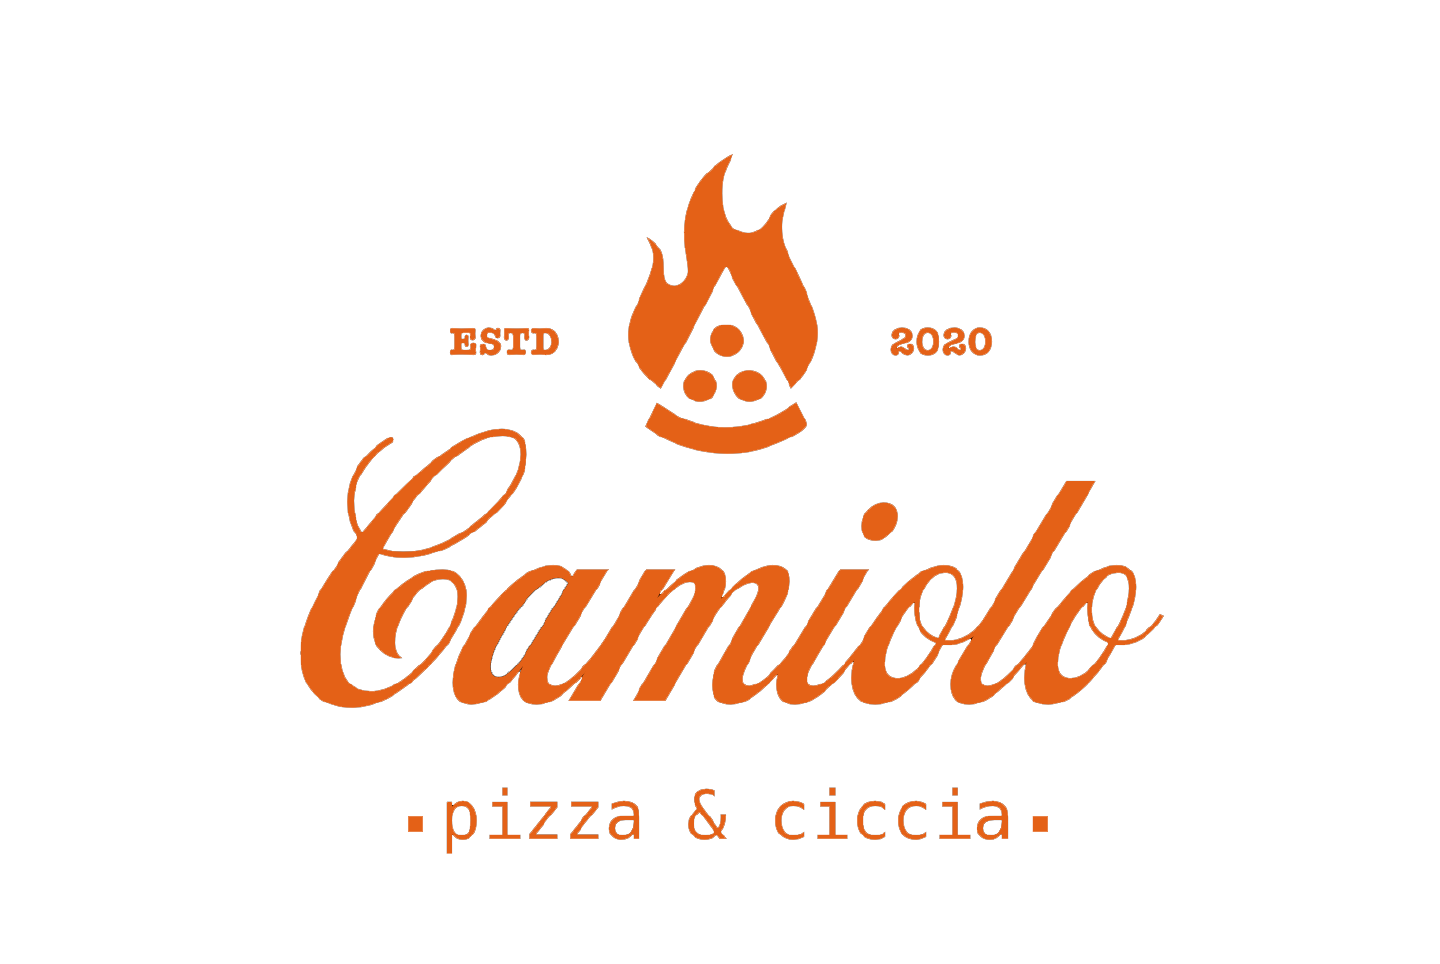 Pizzeria Camiolo